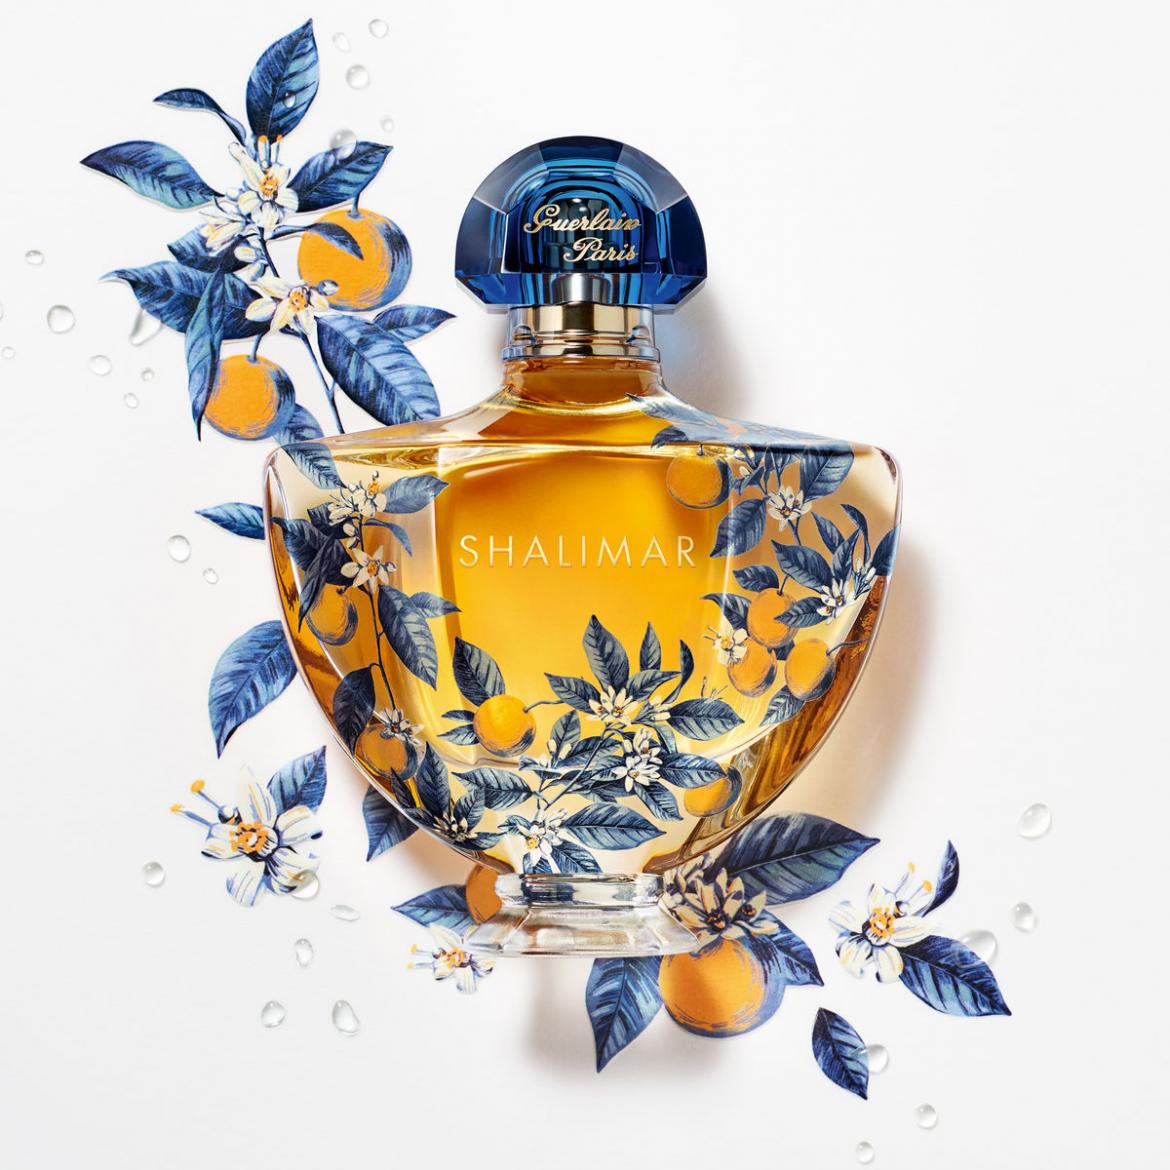 Gorgeous inside out, the Guerlain Shalimar eau de parfum serie